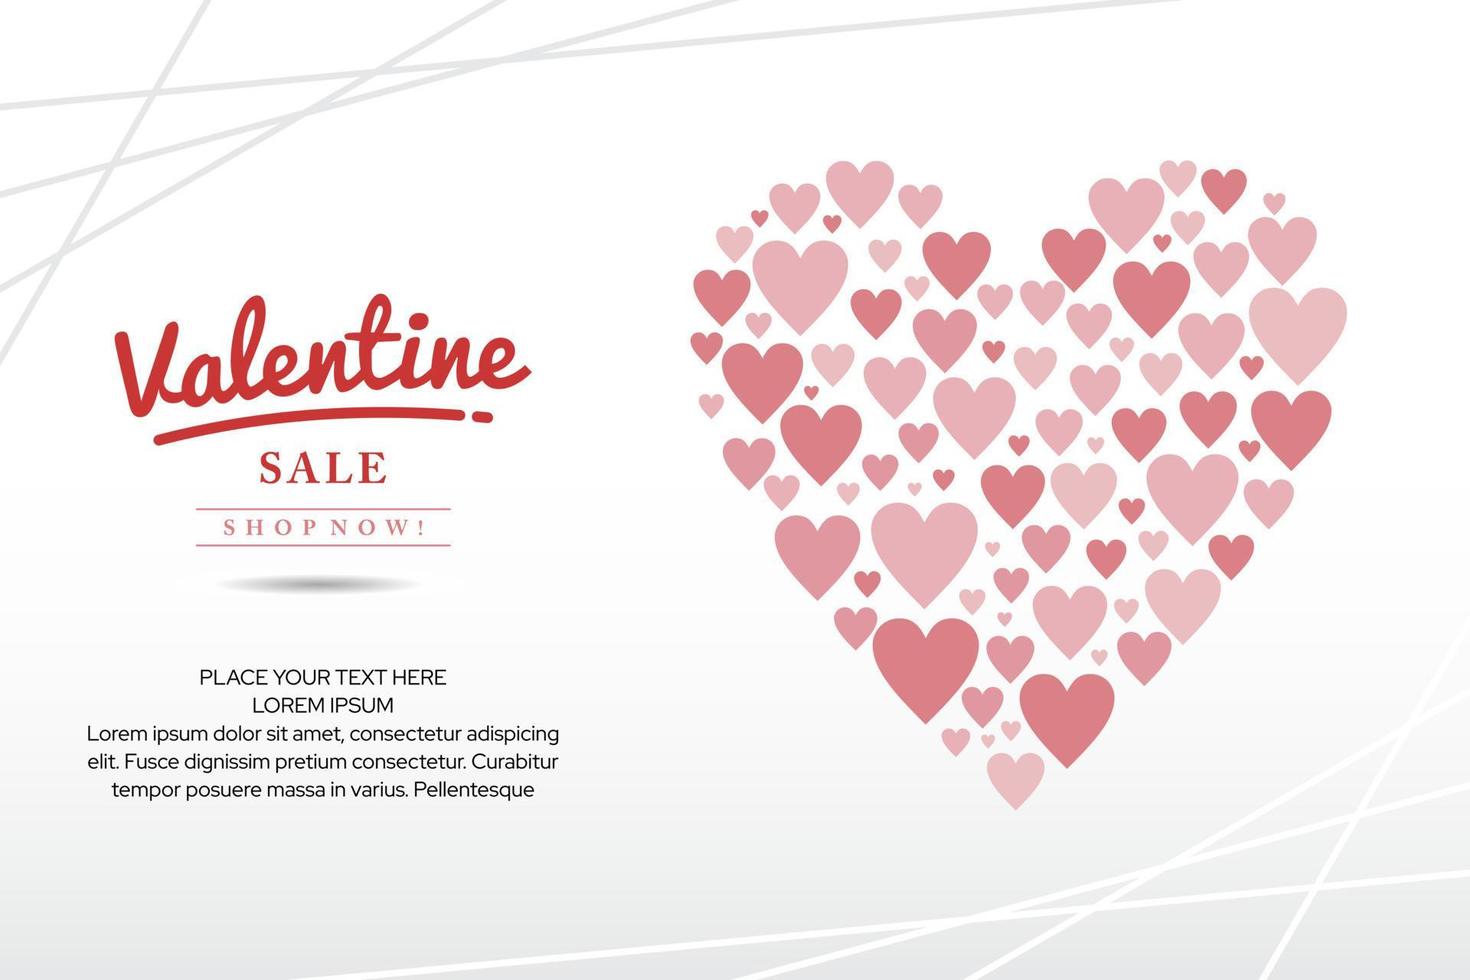 Valentinstag-Verkaufsförderungs-Banner-Design geeignet für Social-Media-Posts, Broschüren, Poster, Webbanner usw. vektor